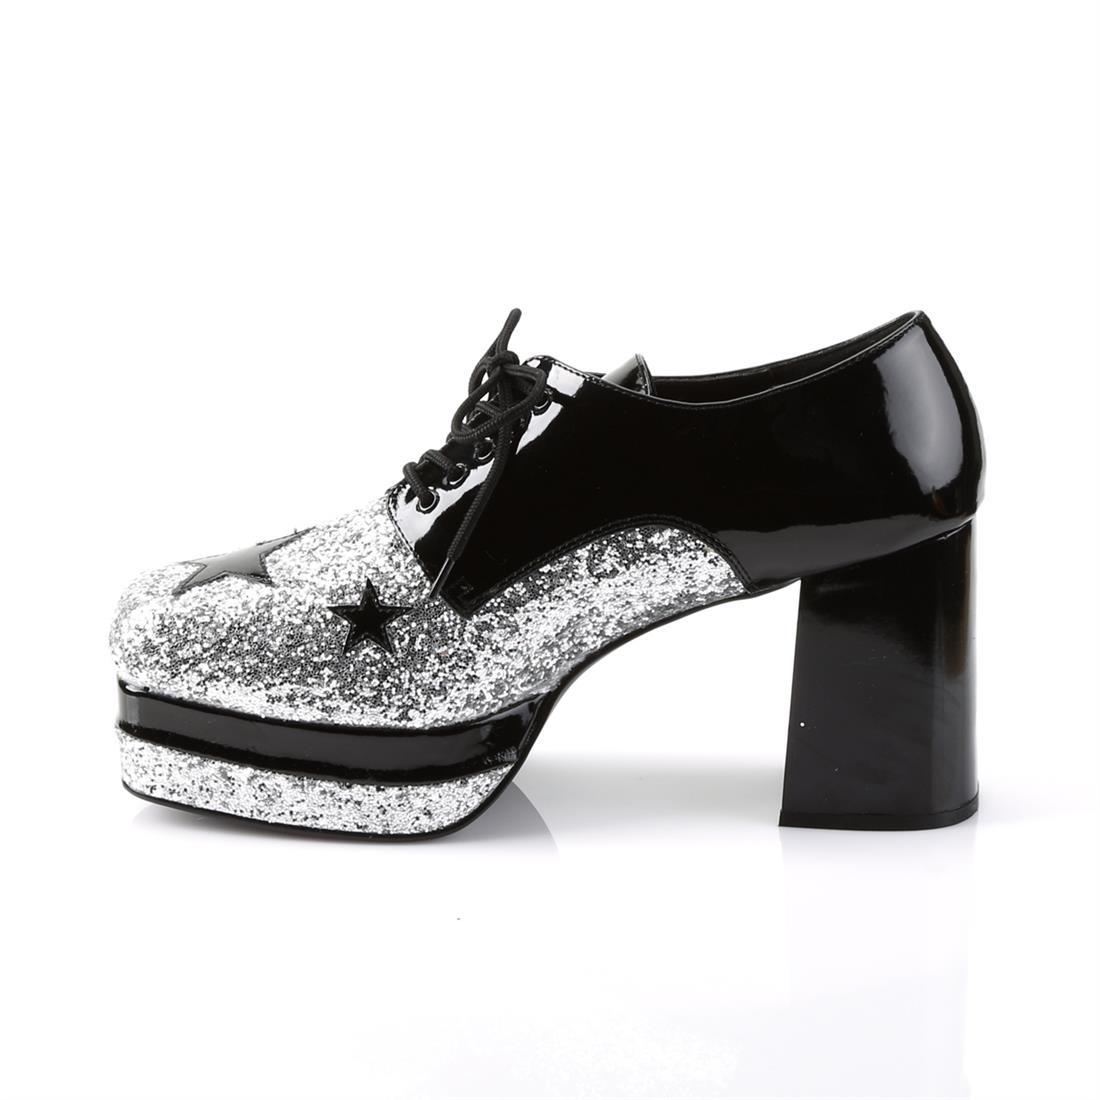 Glam Rock Platform Shoes - Black/Silver